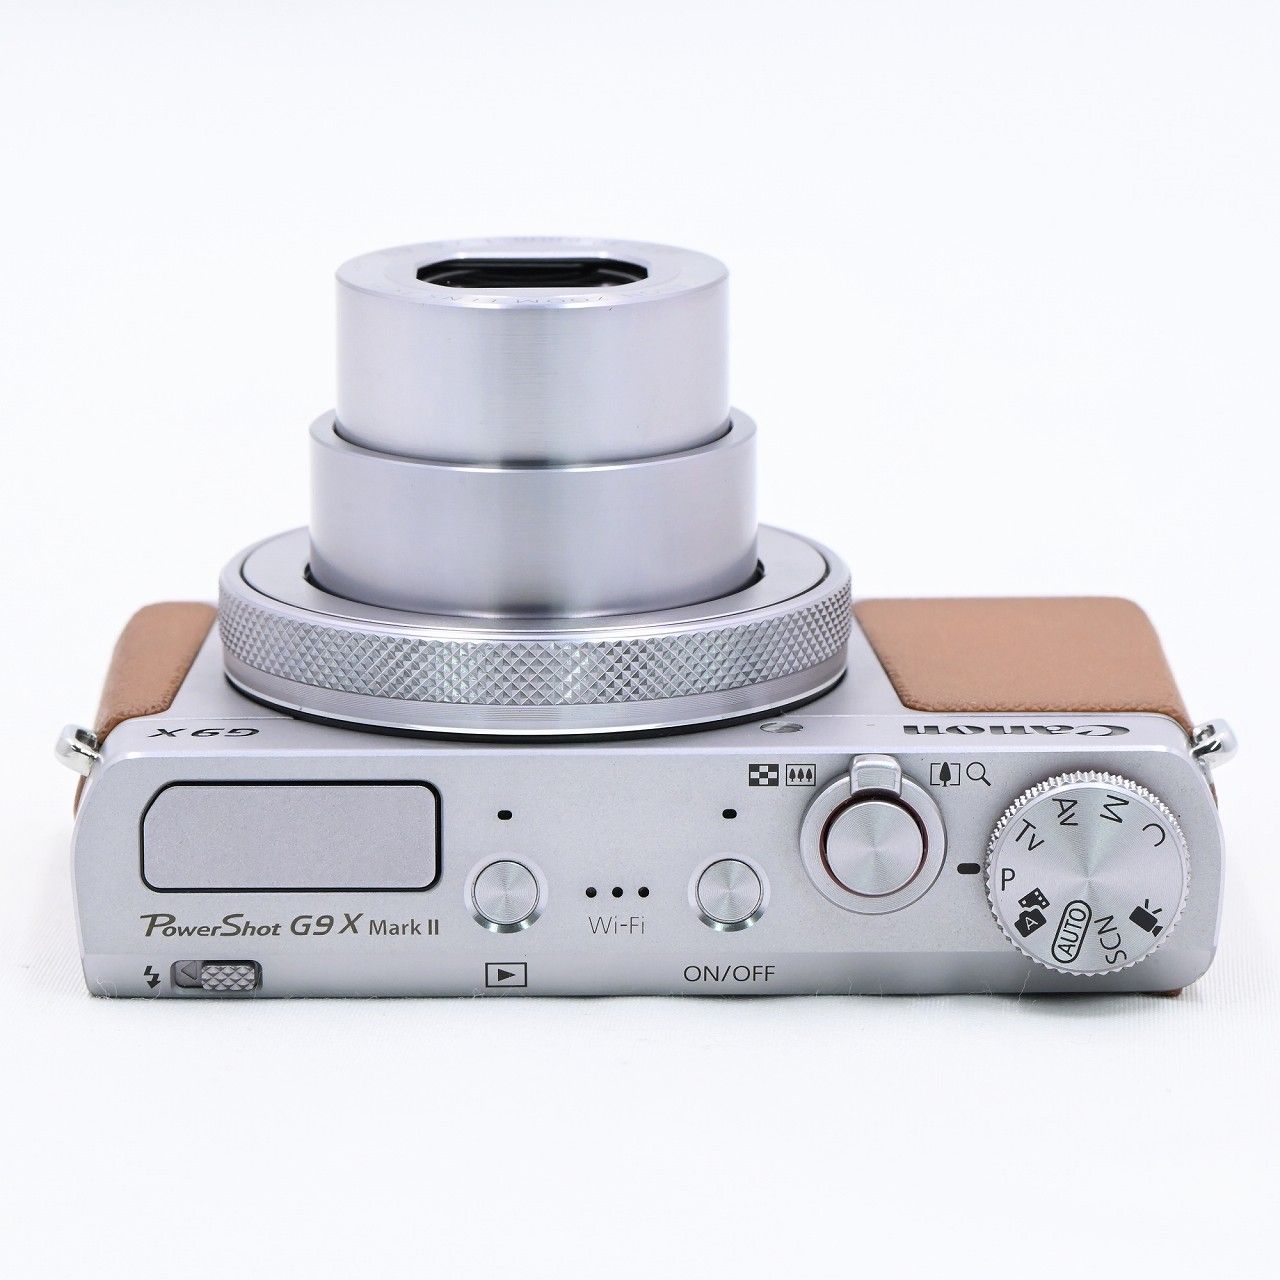 Canonキヤノン PowerShot G9 X MarkII シルバーオレンジ - デジタルカメラ